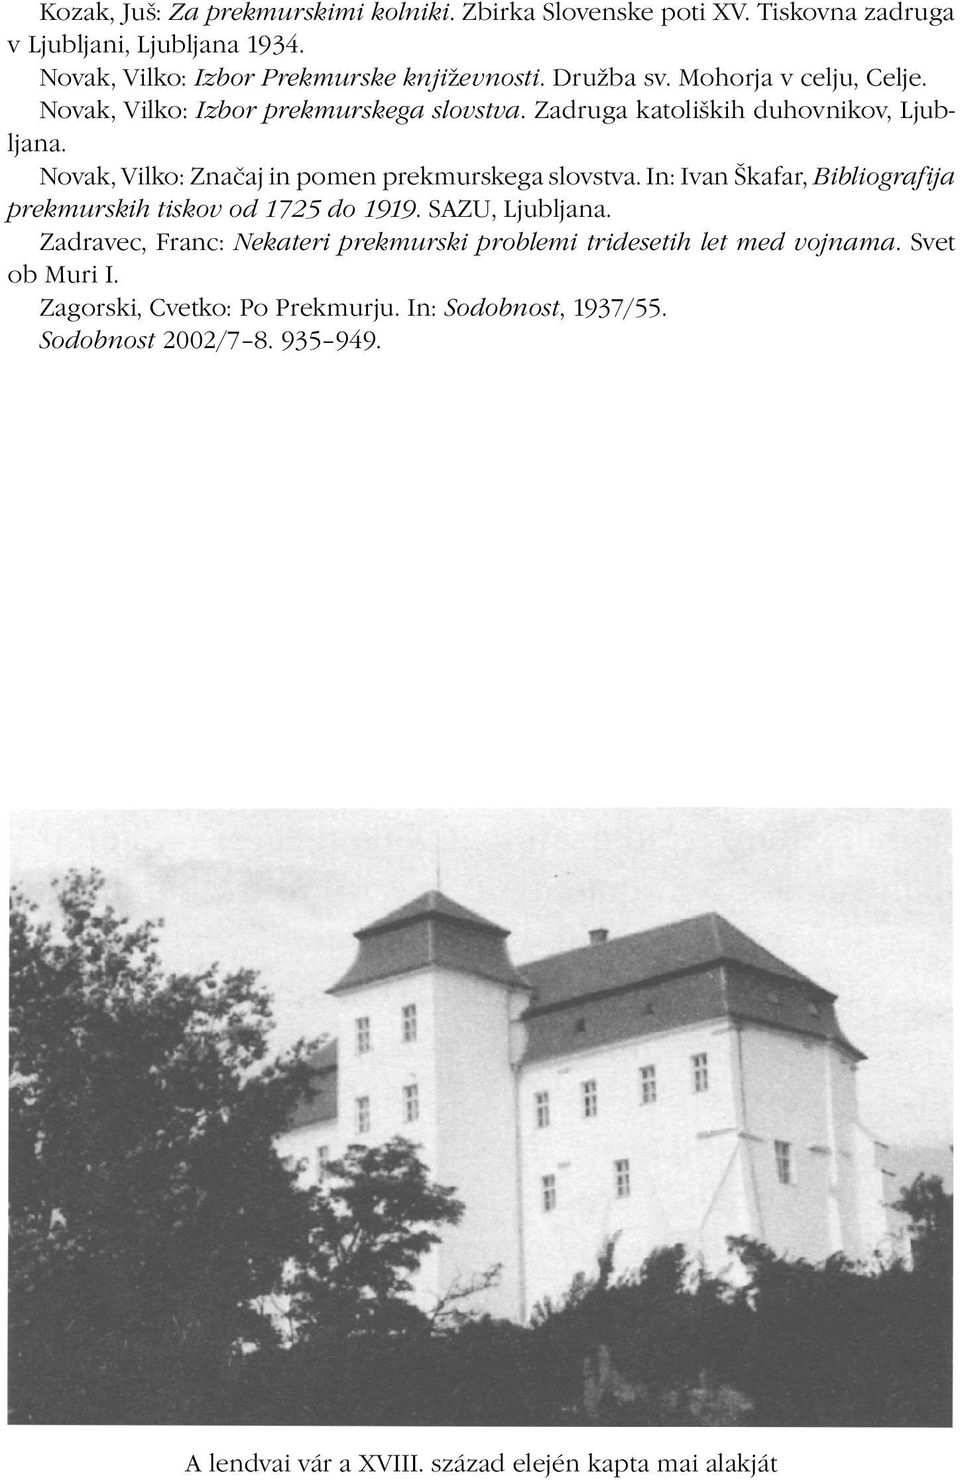 Novak, Vilko: Značaj in pomen prekmurskega slovstva. In: Ivan Škafar, Bibliografija prekmurskih tiskov od 1725 do 1919. SAZU, Ljubljana.